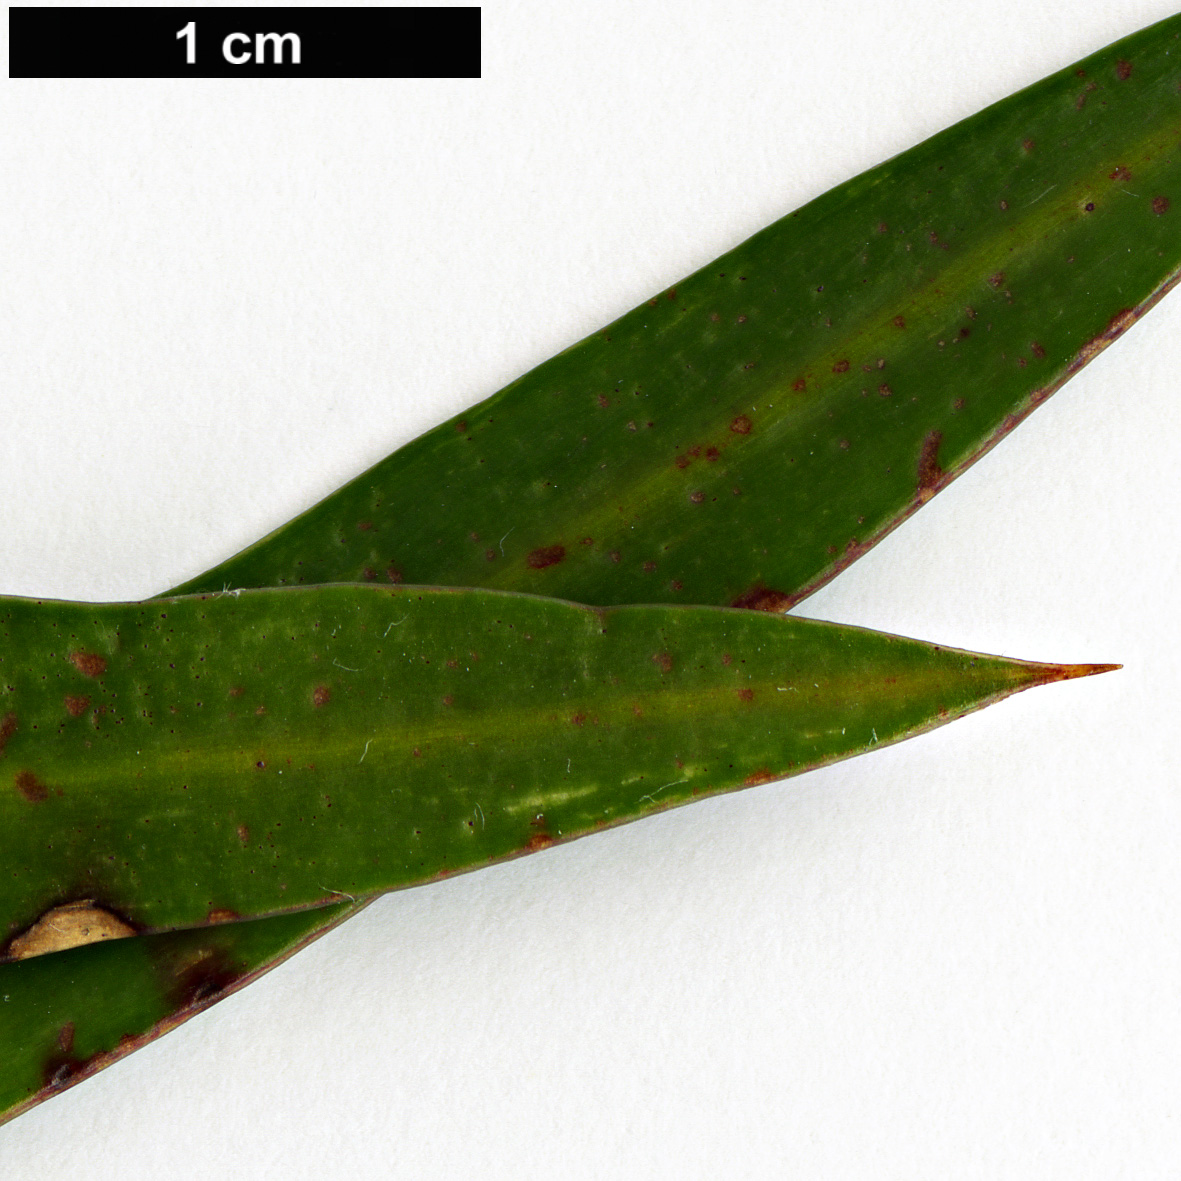 High resolution image: Family: Podocarpaceae - Genus: Podocarpus - Taxon: elatus